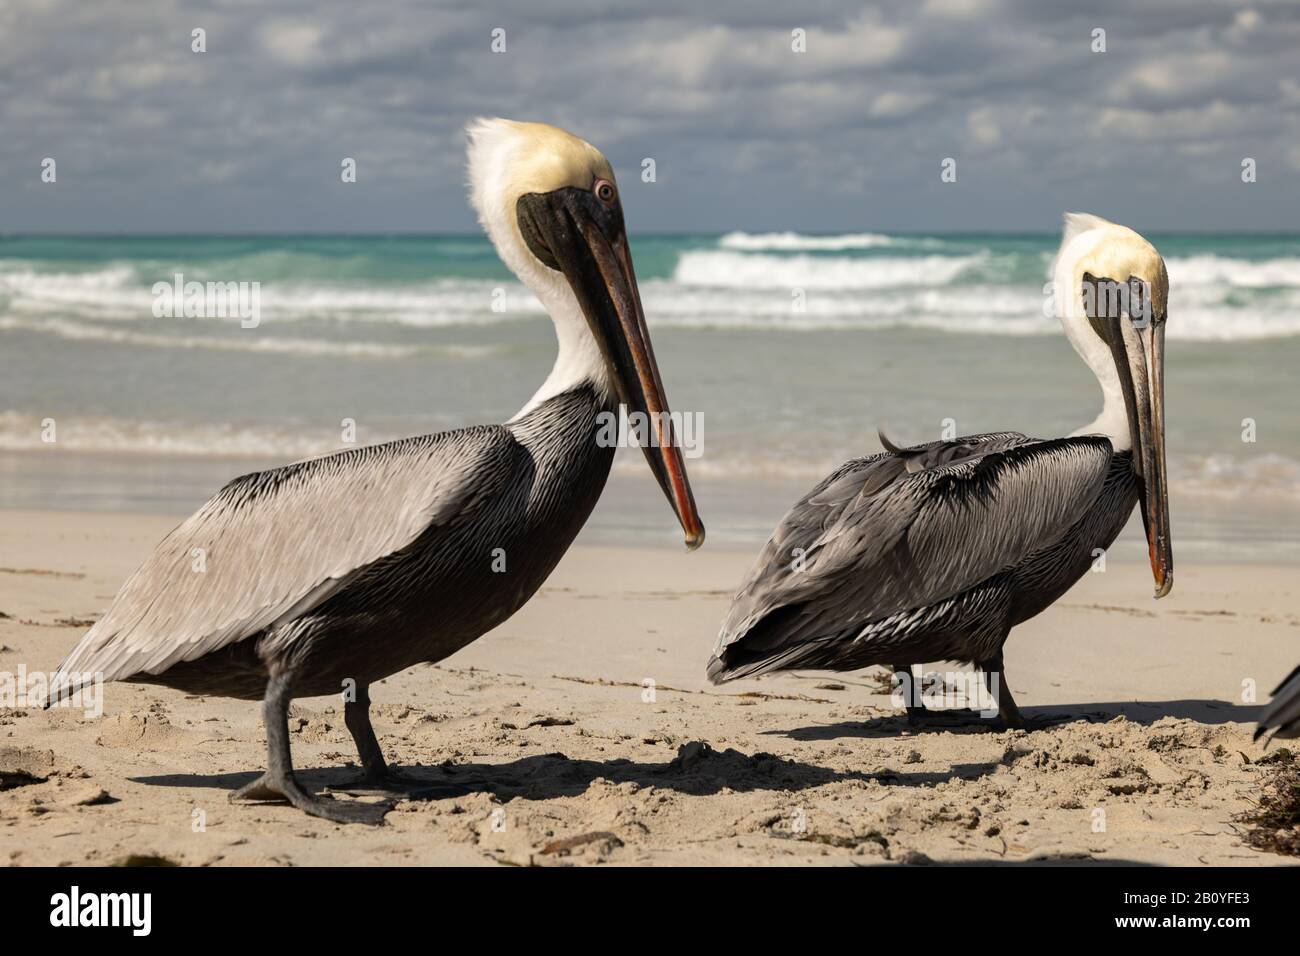 Famiglia pelicana marrone sulla spiaggia, onde oceaniche e nuvole sullo sfondo Foto Stock